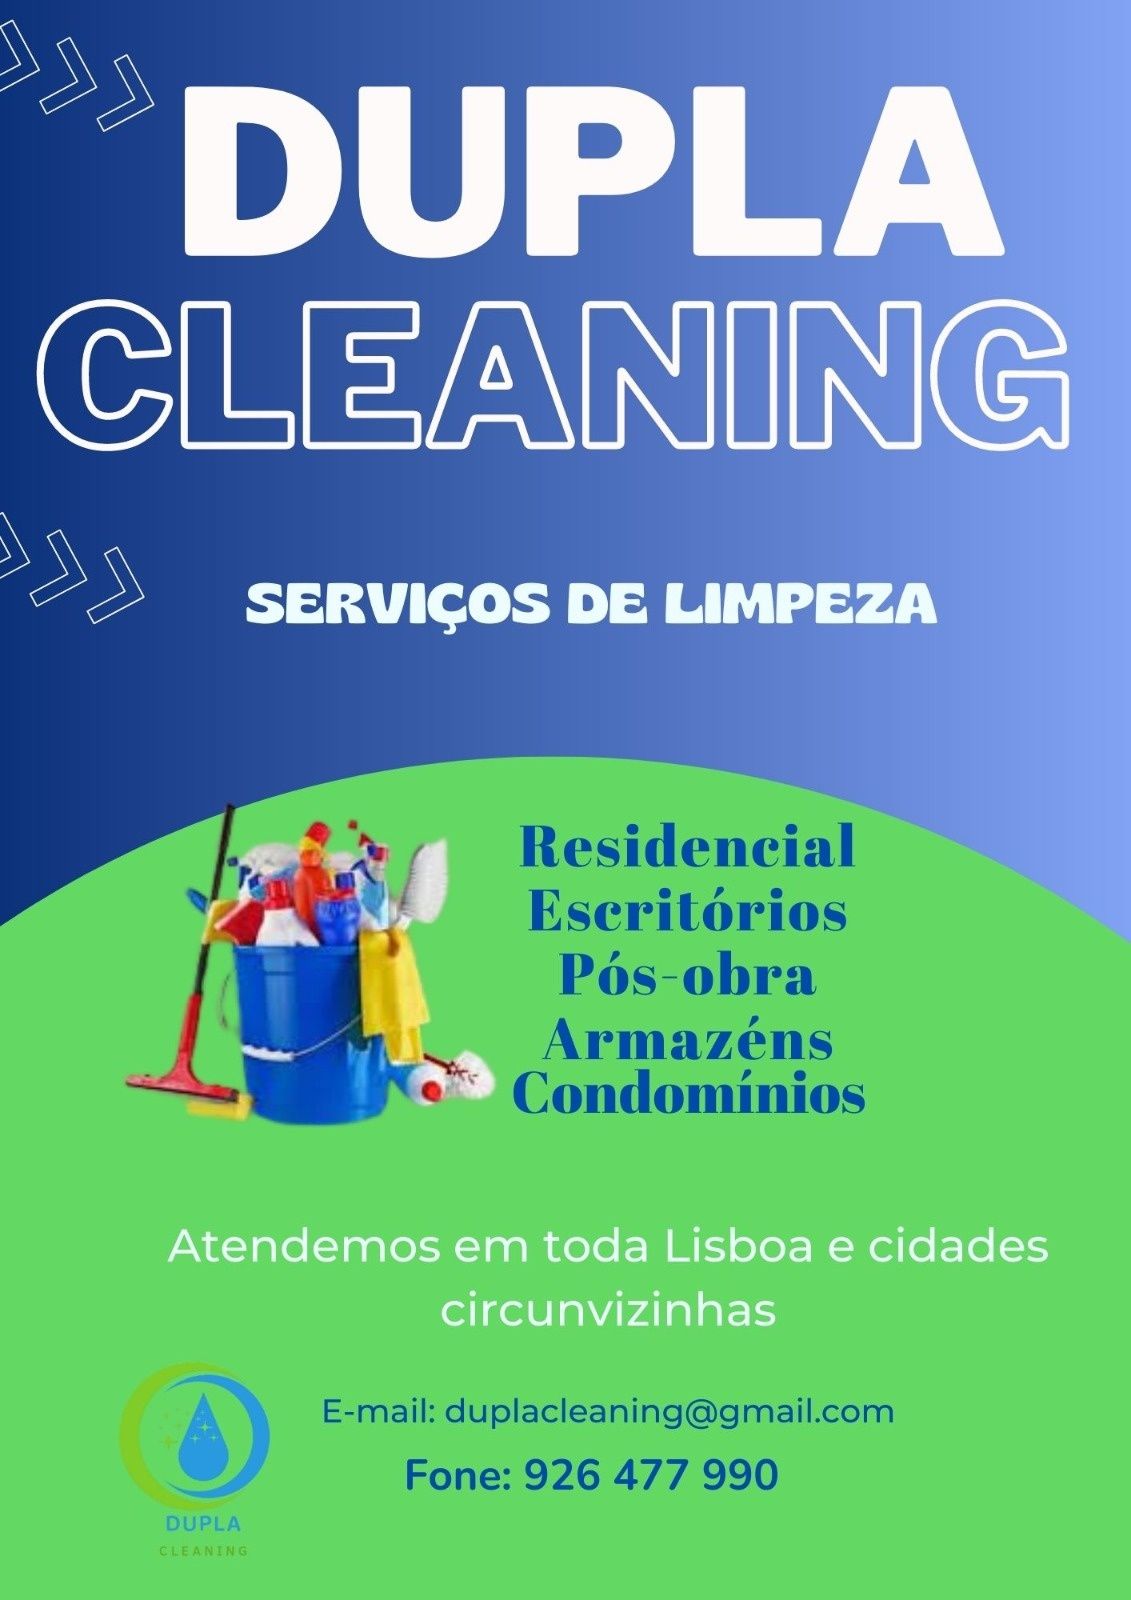 Dupla Cleaning Serviços de limpeza geral e de espaços comerciais.